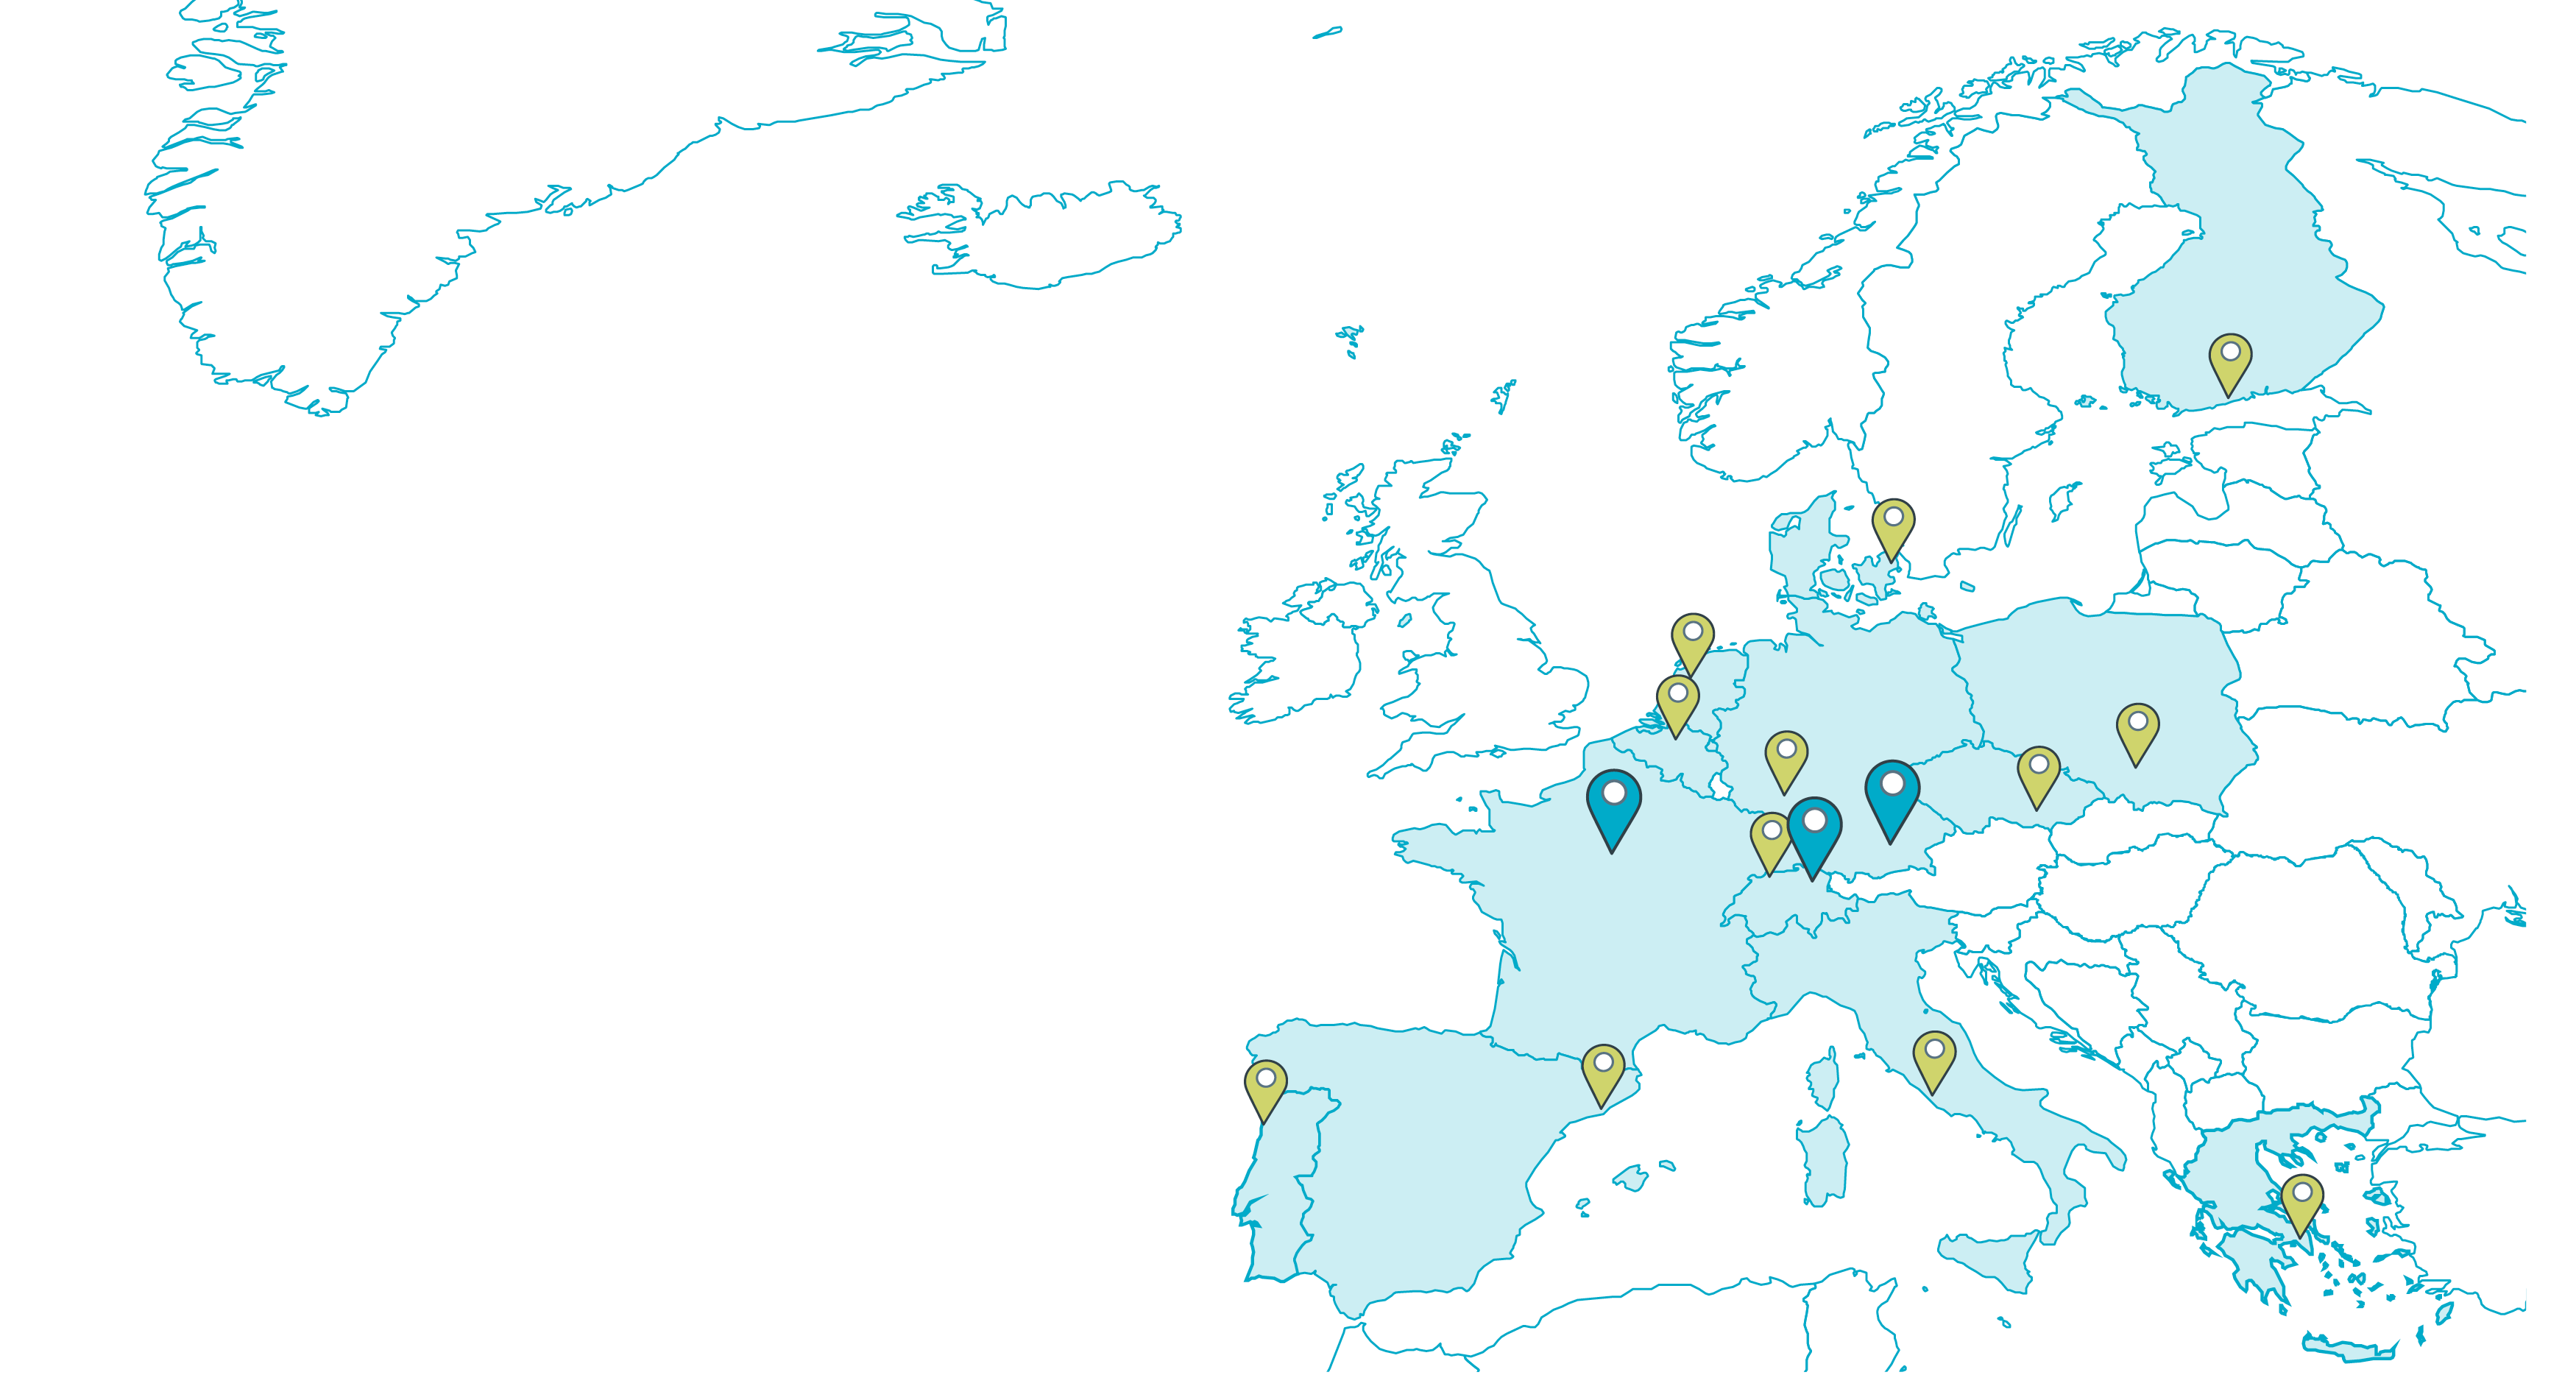 ICOS Cities network